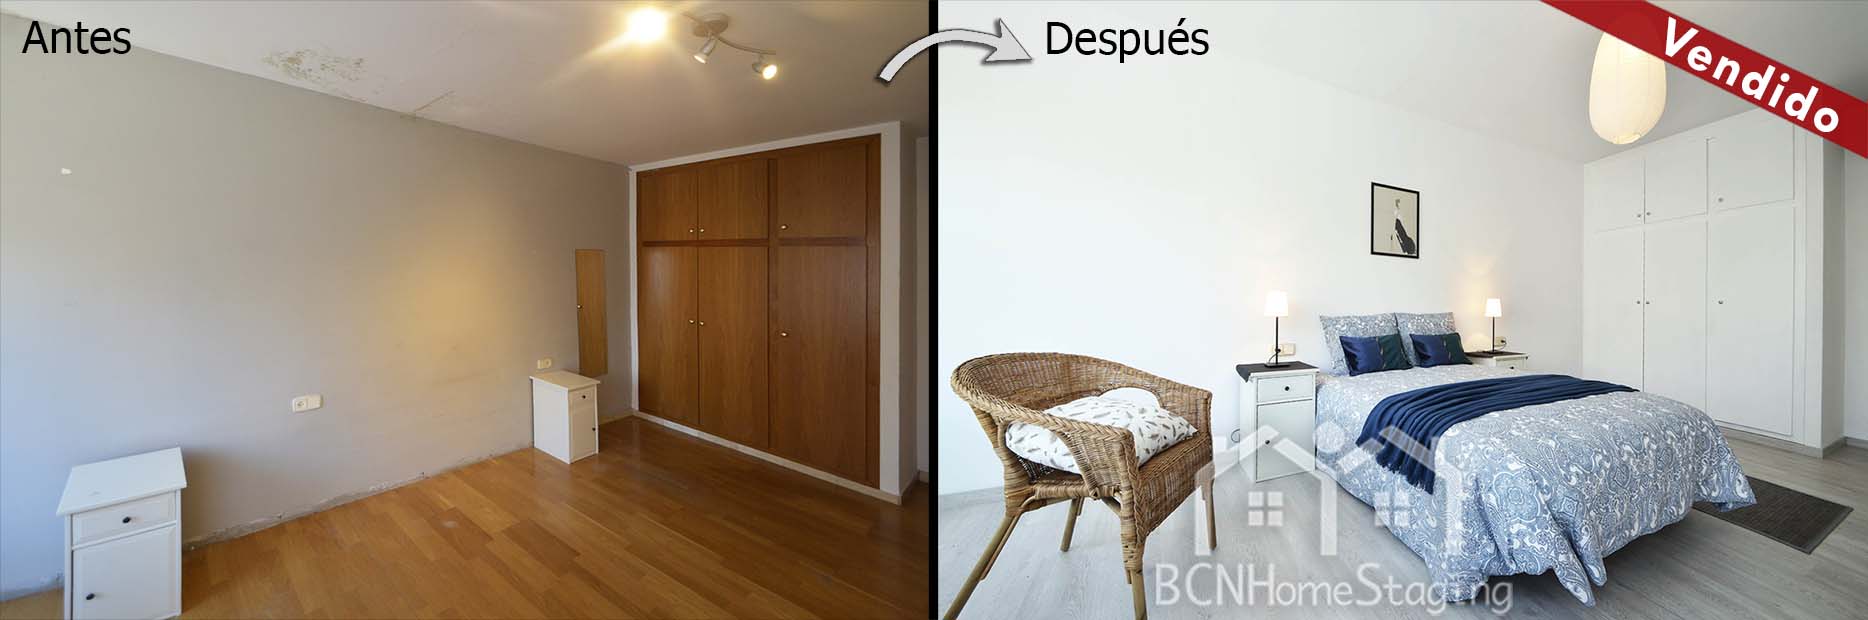 home-staging-barcelona-salon-muebles-cartón